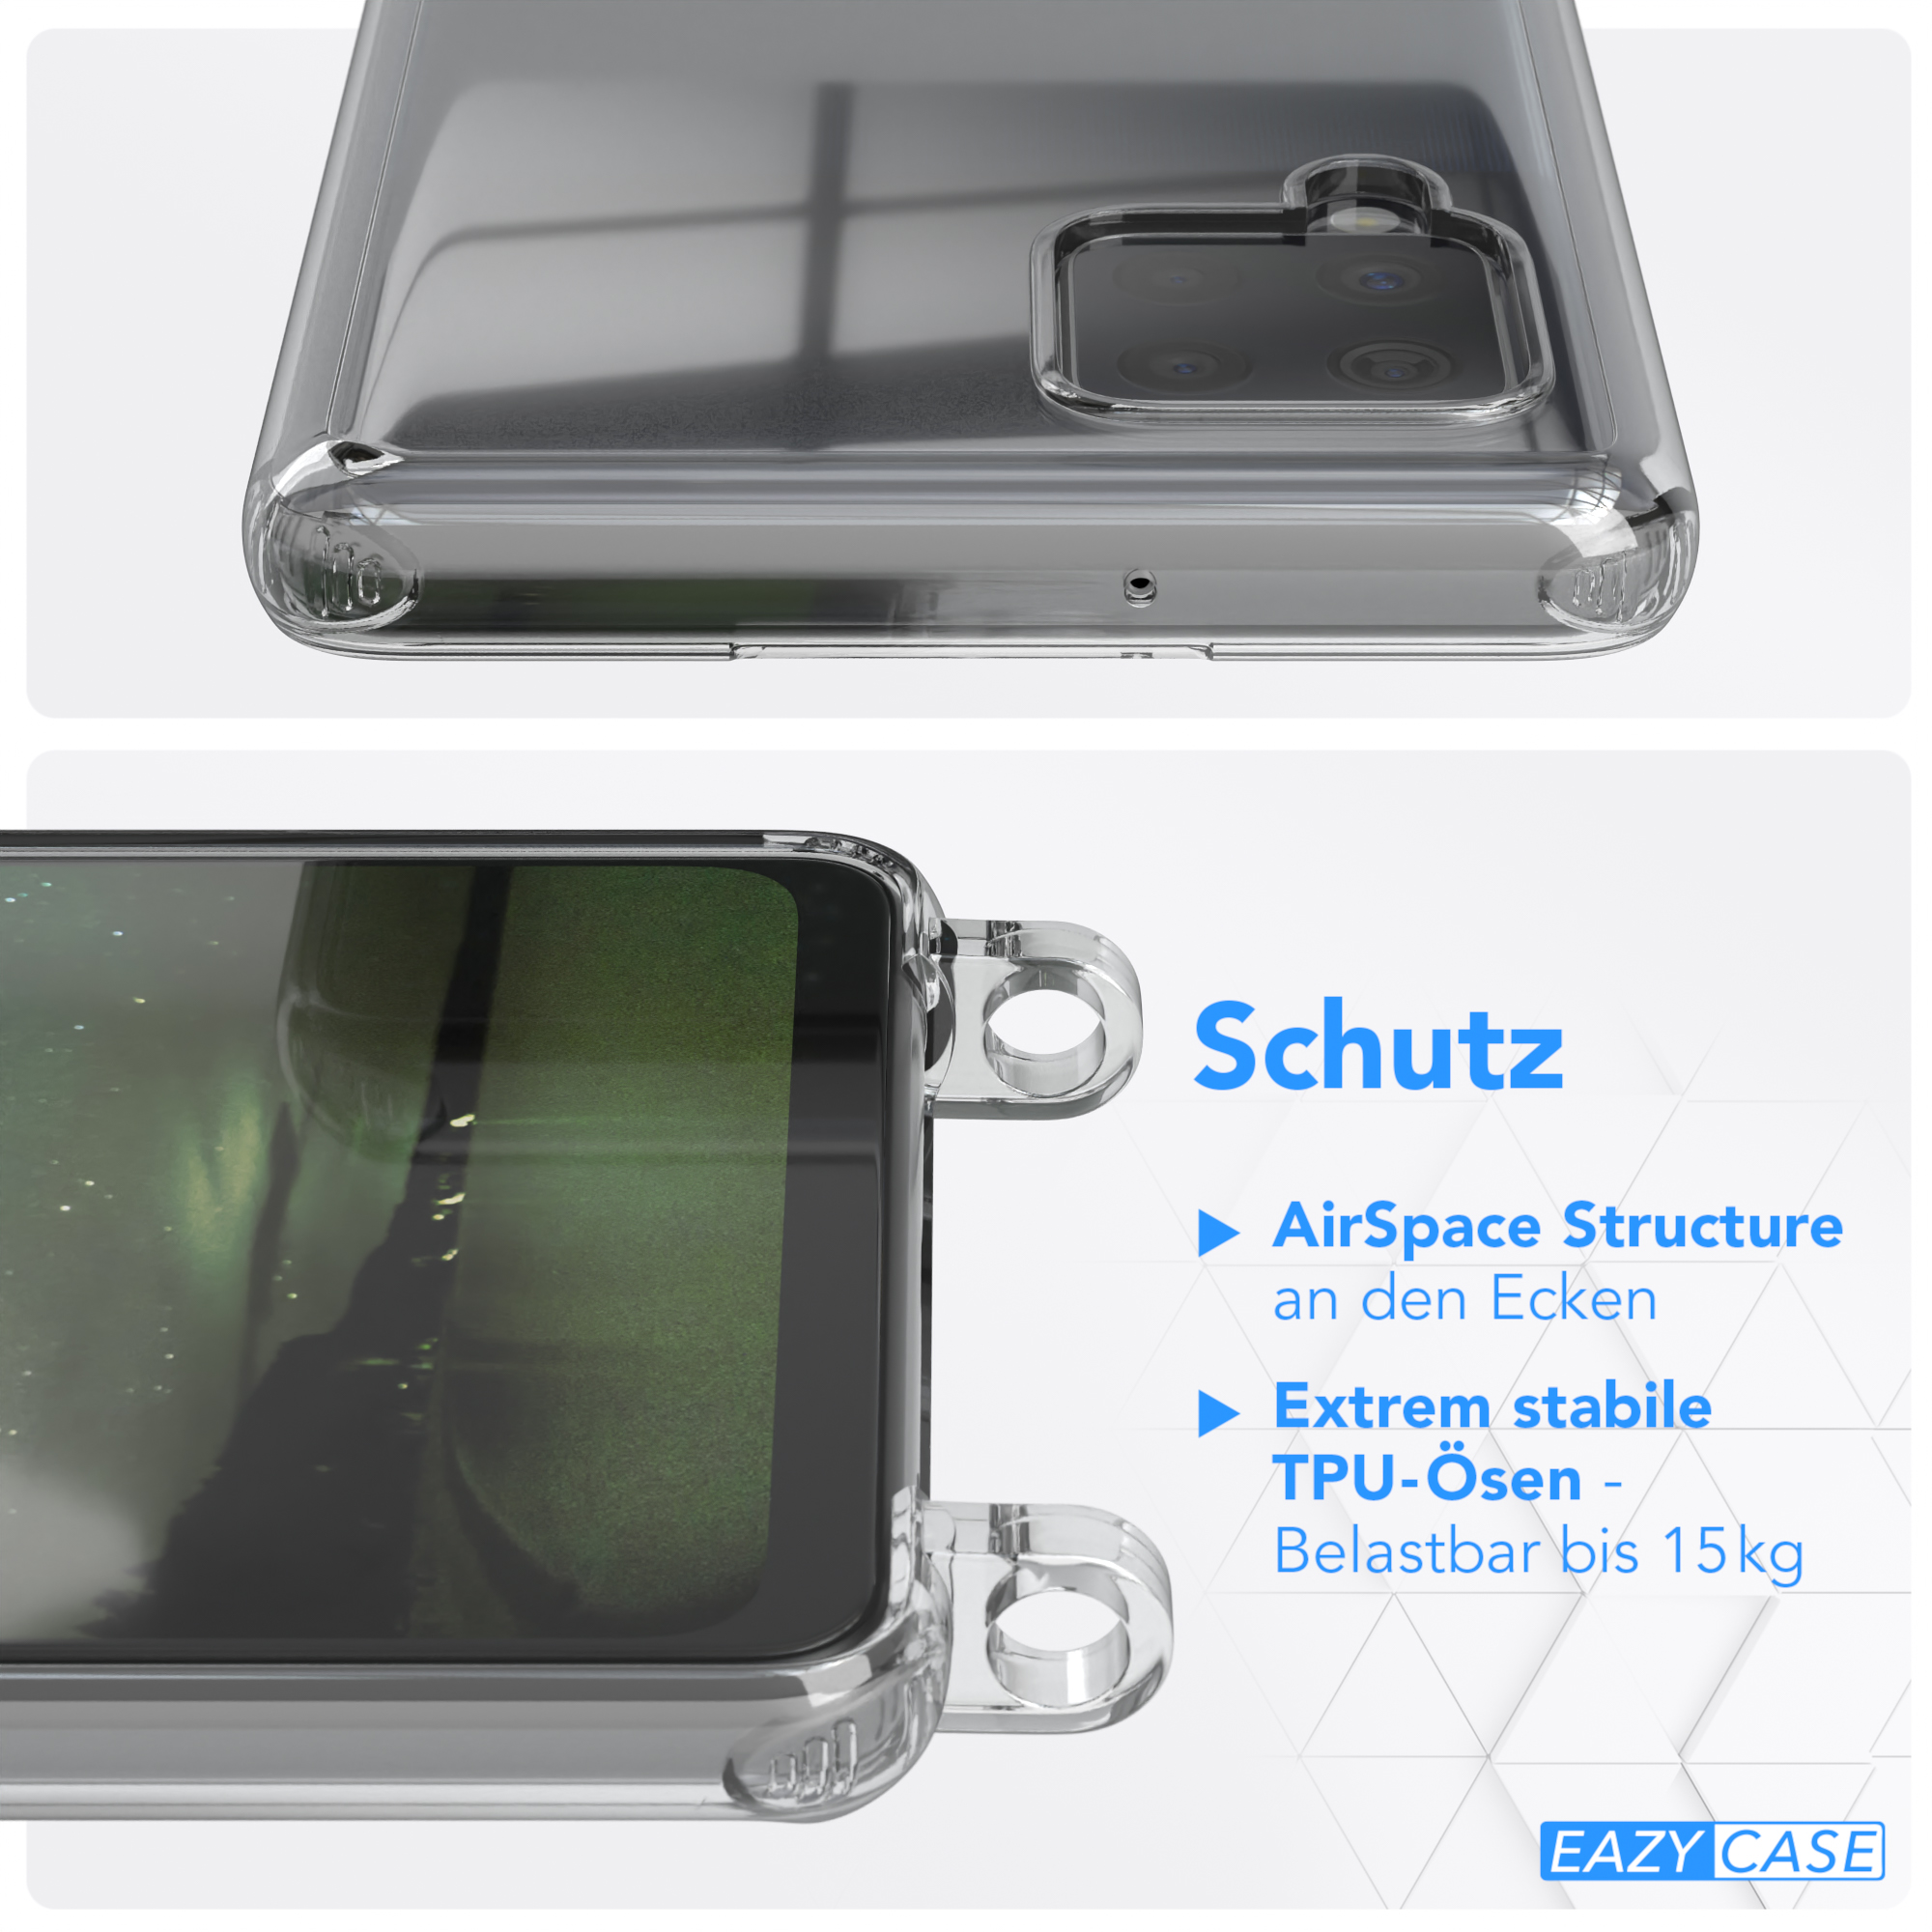 EAZY CASE Transparente A42 Handyhülle runder mit Dunkelgrün / Galaxy Umhängetasche, Samsung, 5G, Nachtgrün unifarbend, Kette